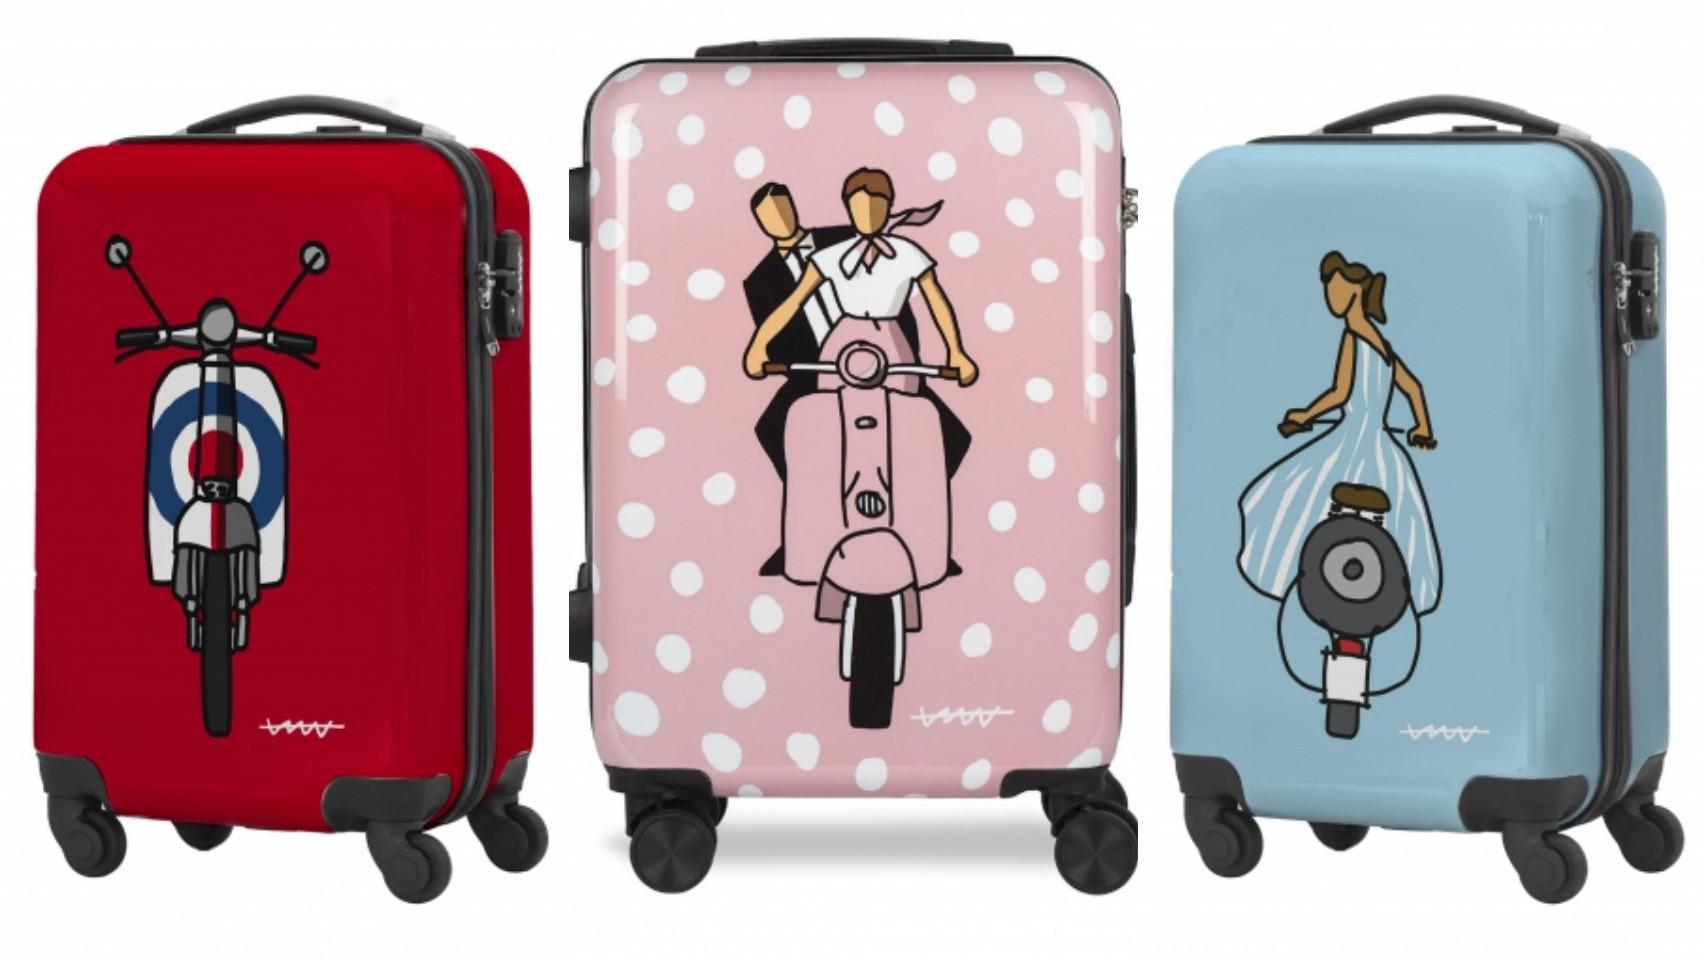 Las nuevas maletas con divertidos diseños que causan furor: solo por 59 euros